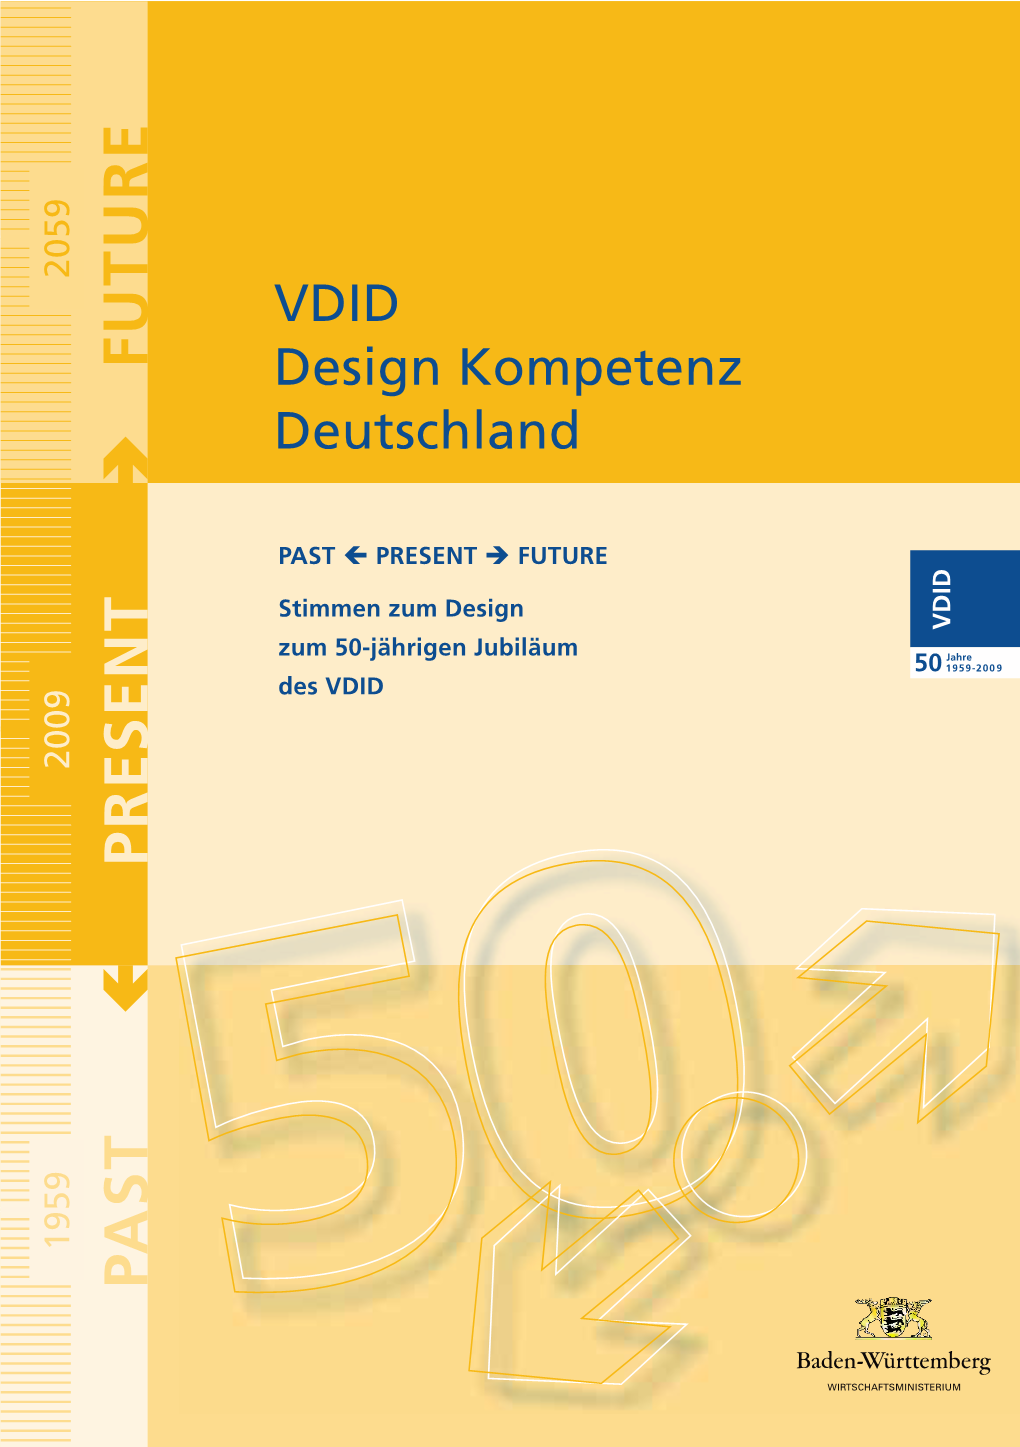 VDID Design Kompetenz Deutschland